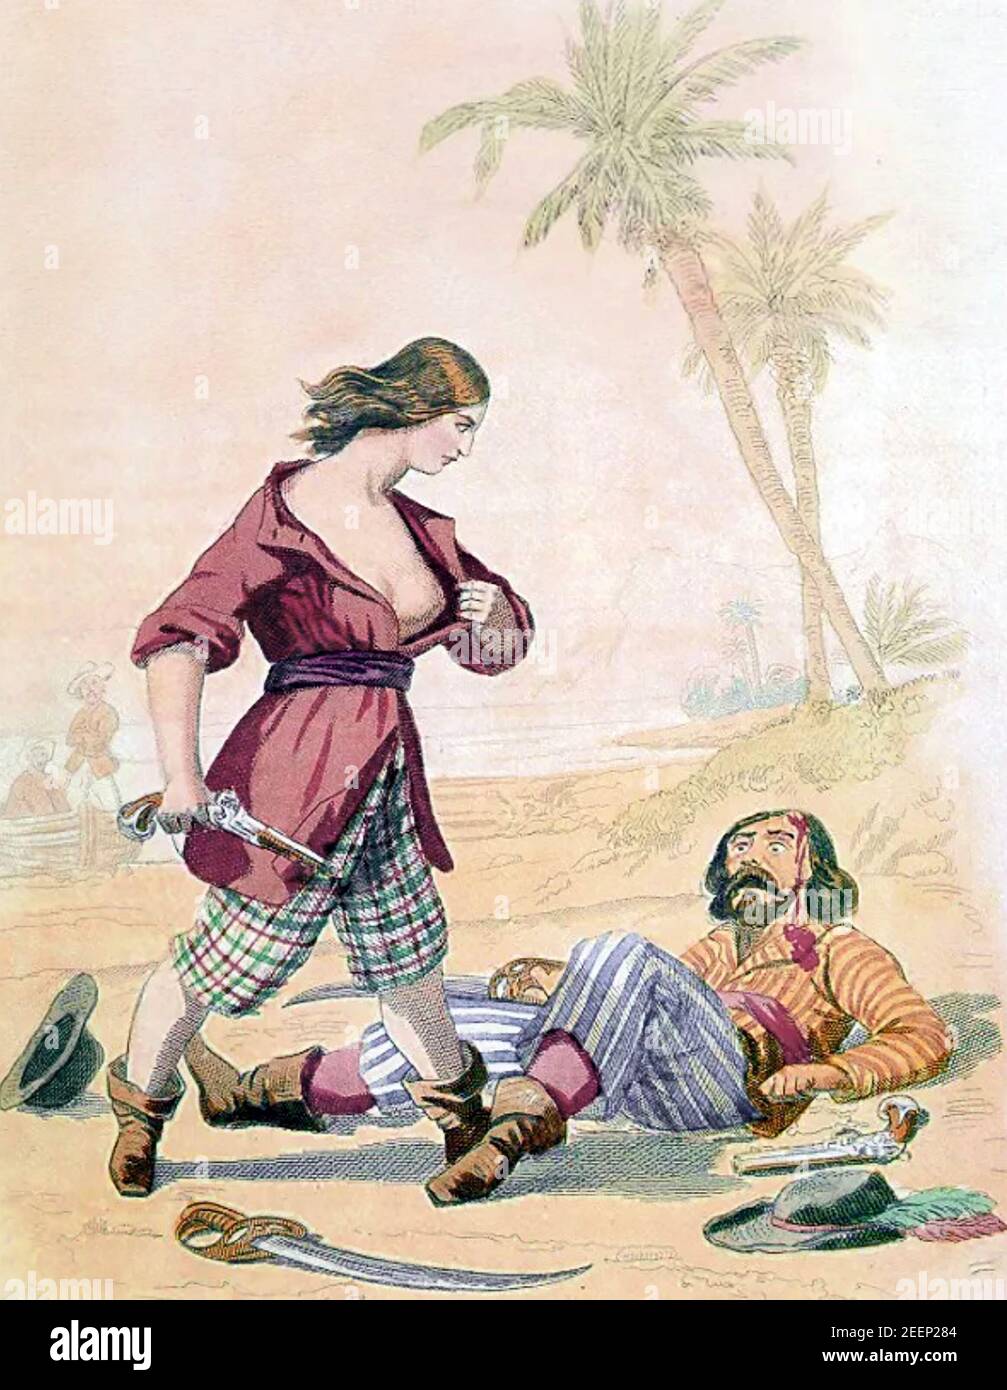 MARY A LU (1685-1721) un pirate anglais et une amie d'Anne Bonny, se révélant en tant que femme après avoir fait un autre pirate dans une illustration de 1846 Banque D'Images